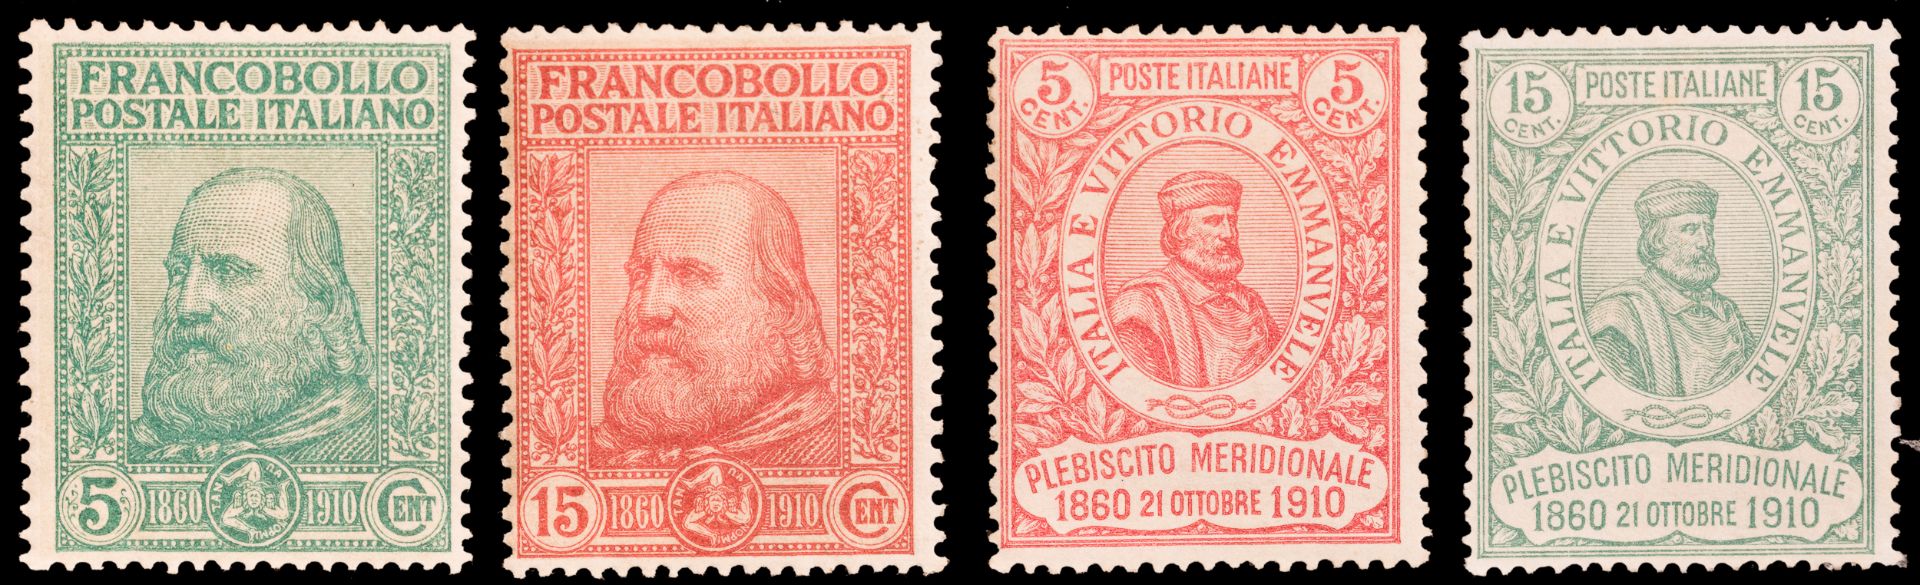 1862/1931, REGNO D'ITALIA - Image 4 of 6